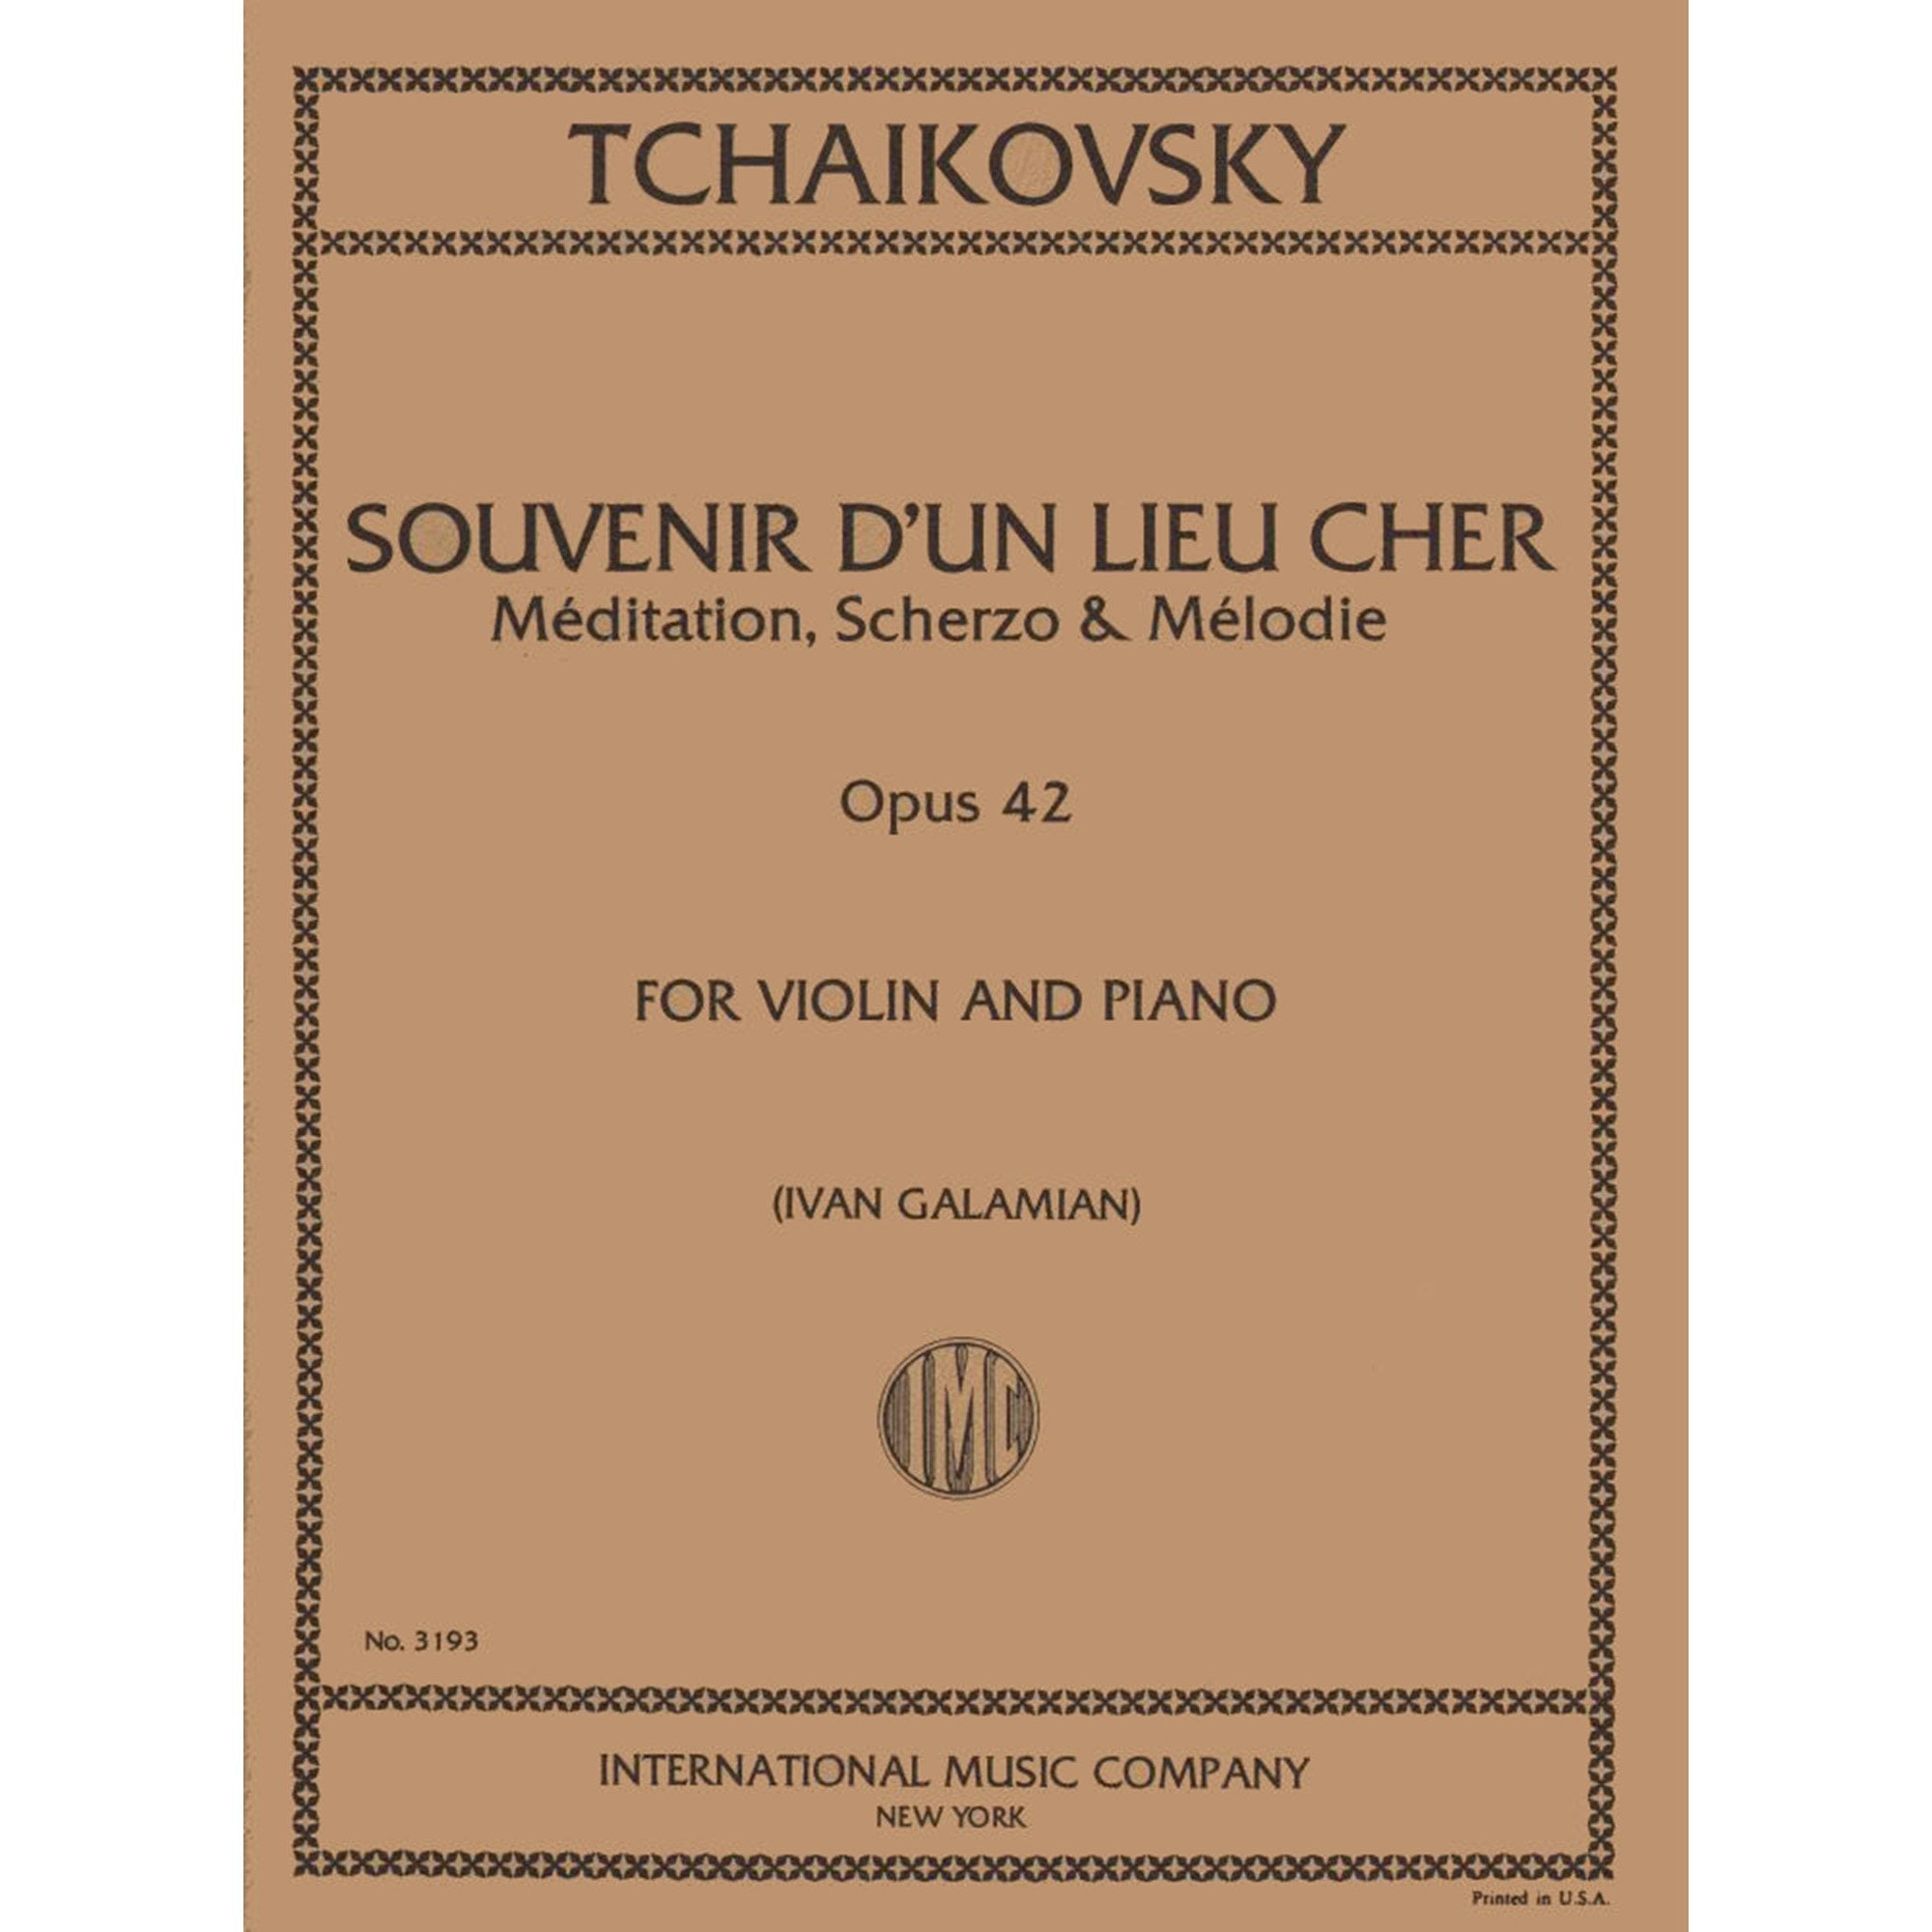 Tchaikovsky: Souvenir d'un Lieu Cher for Violin and Piano, Op 42